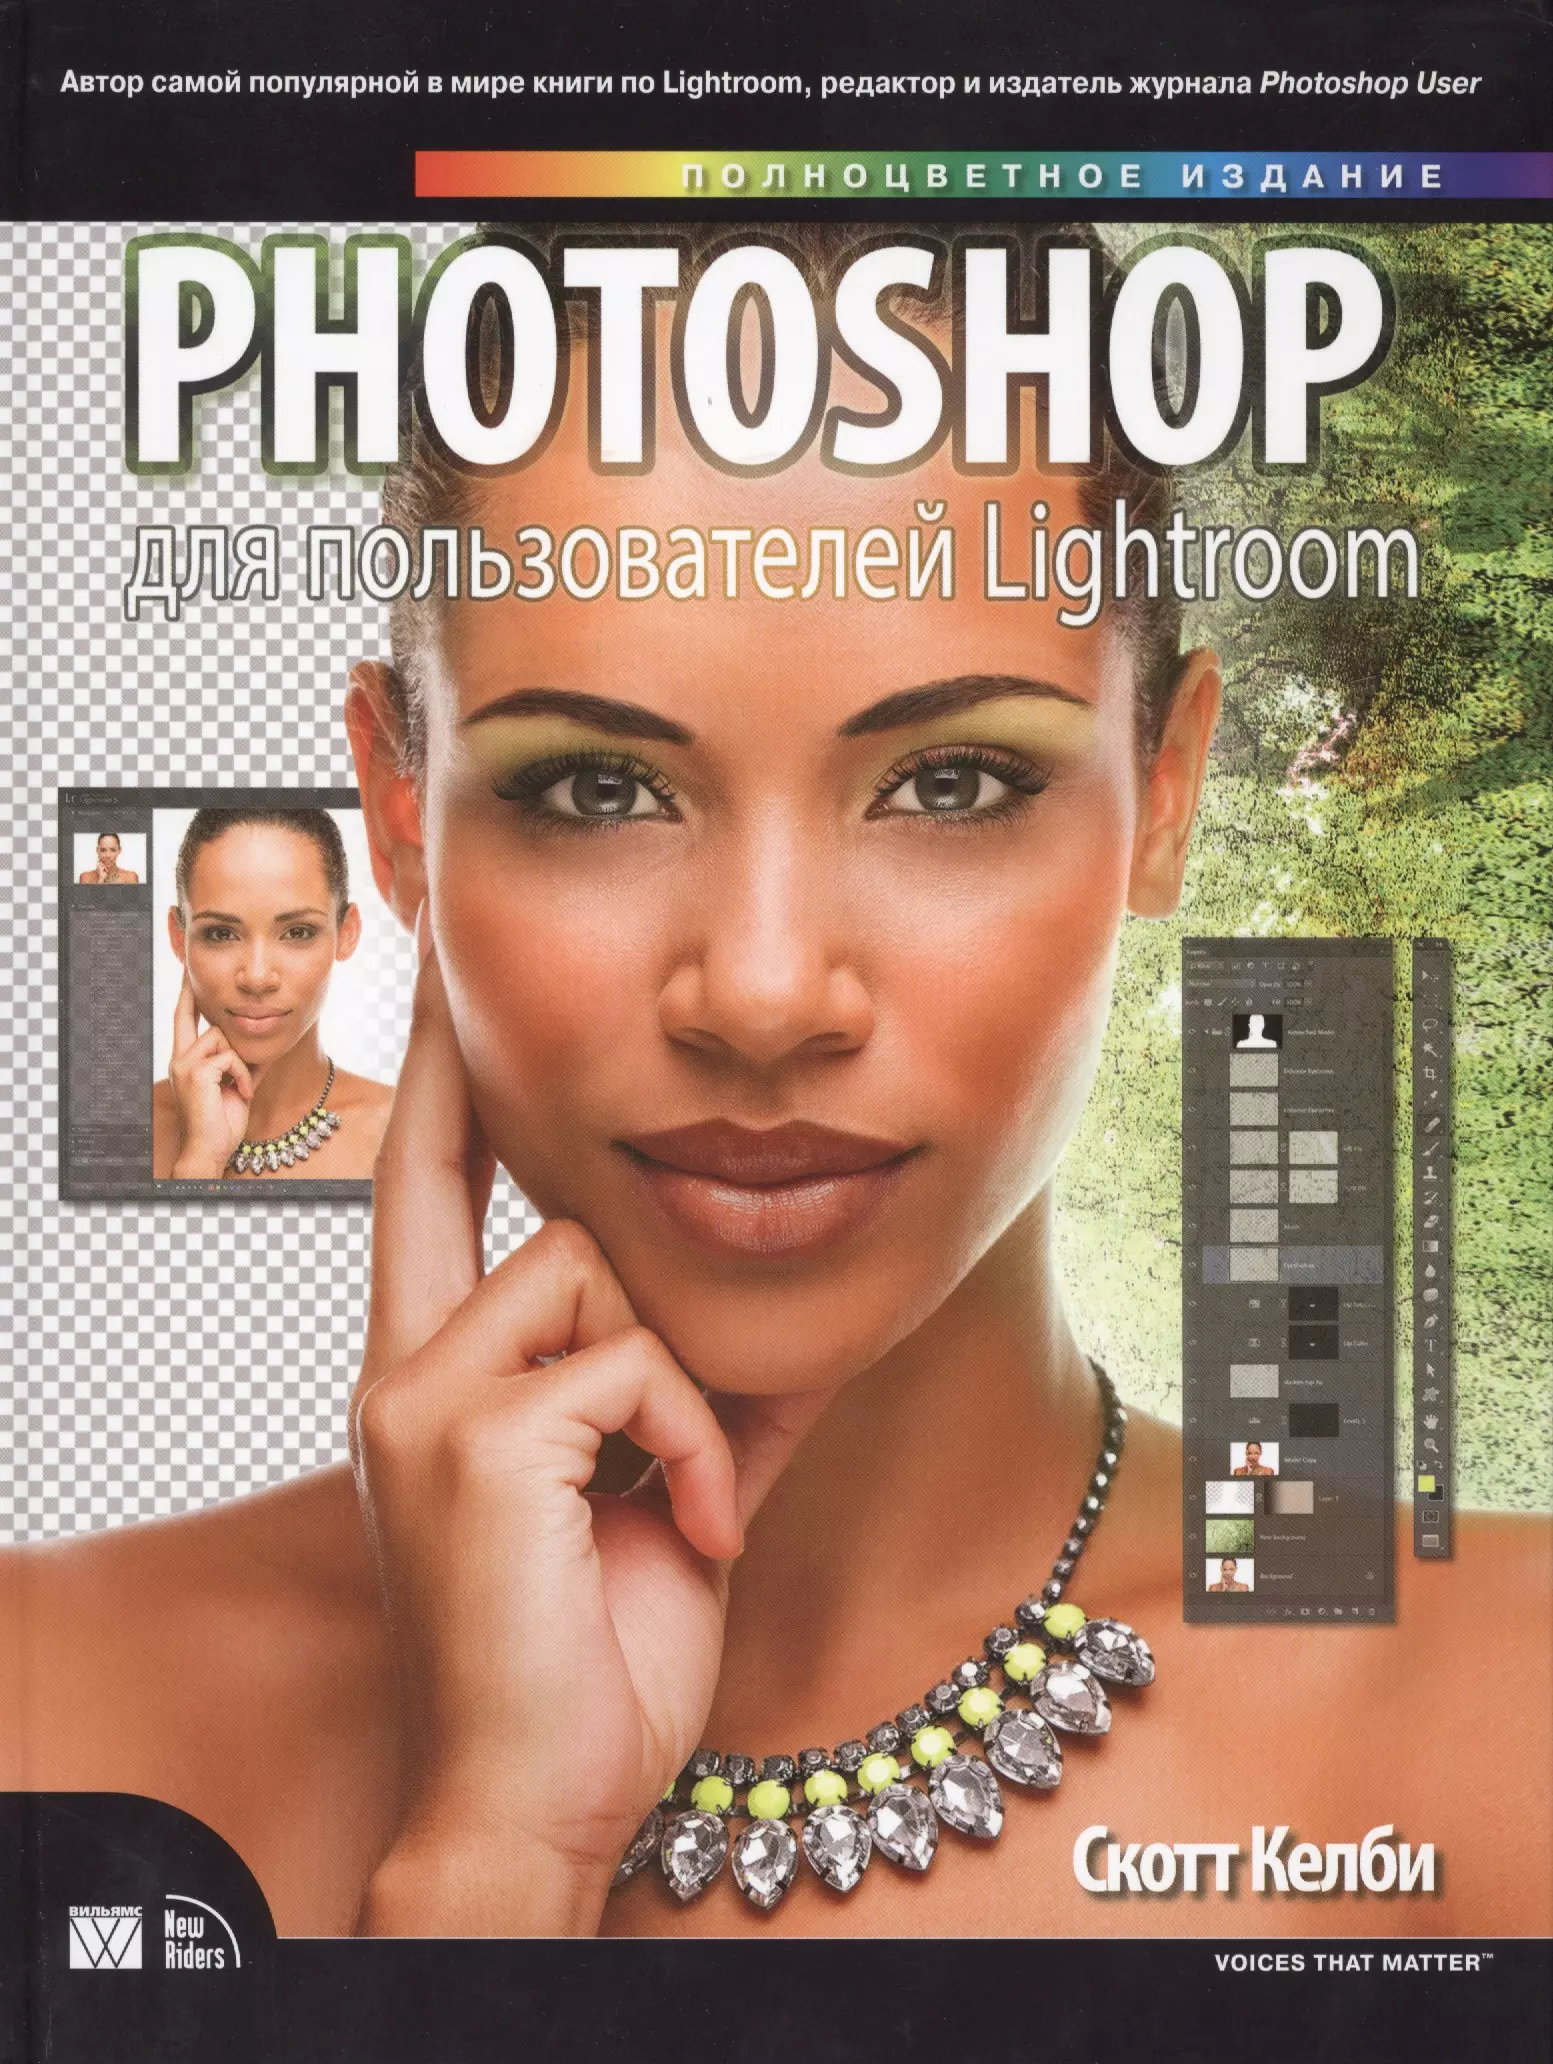 обработка фотографий в lightroom classic быстрые способы достижения отличных результатов 2 е издание скотт келби Келби Скотт Photoshop для пользователей Lightroom